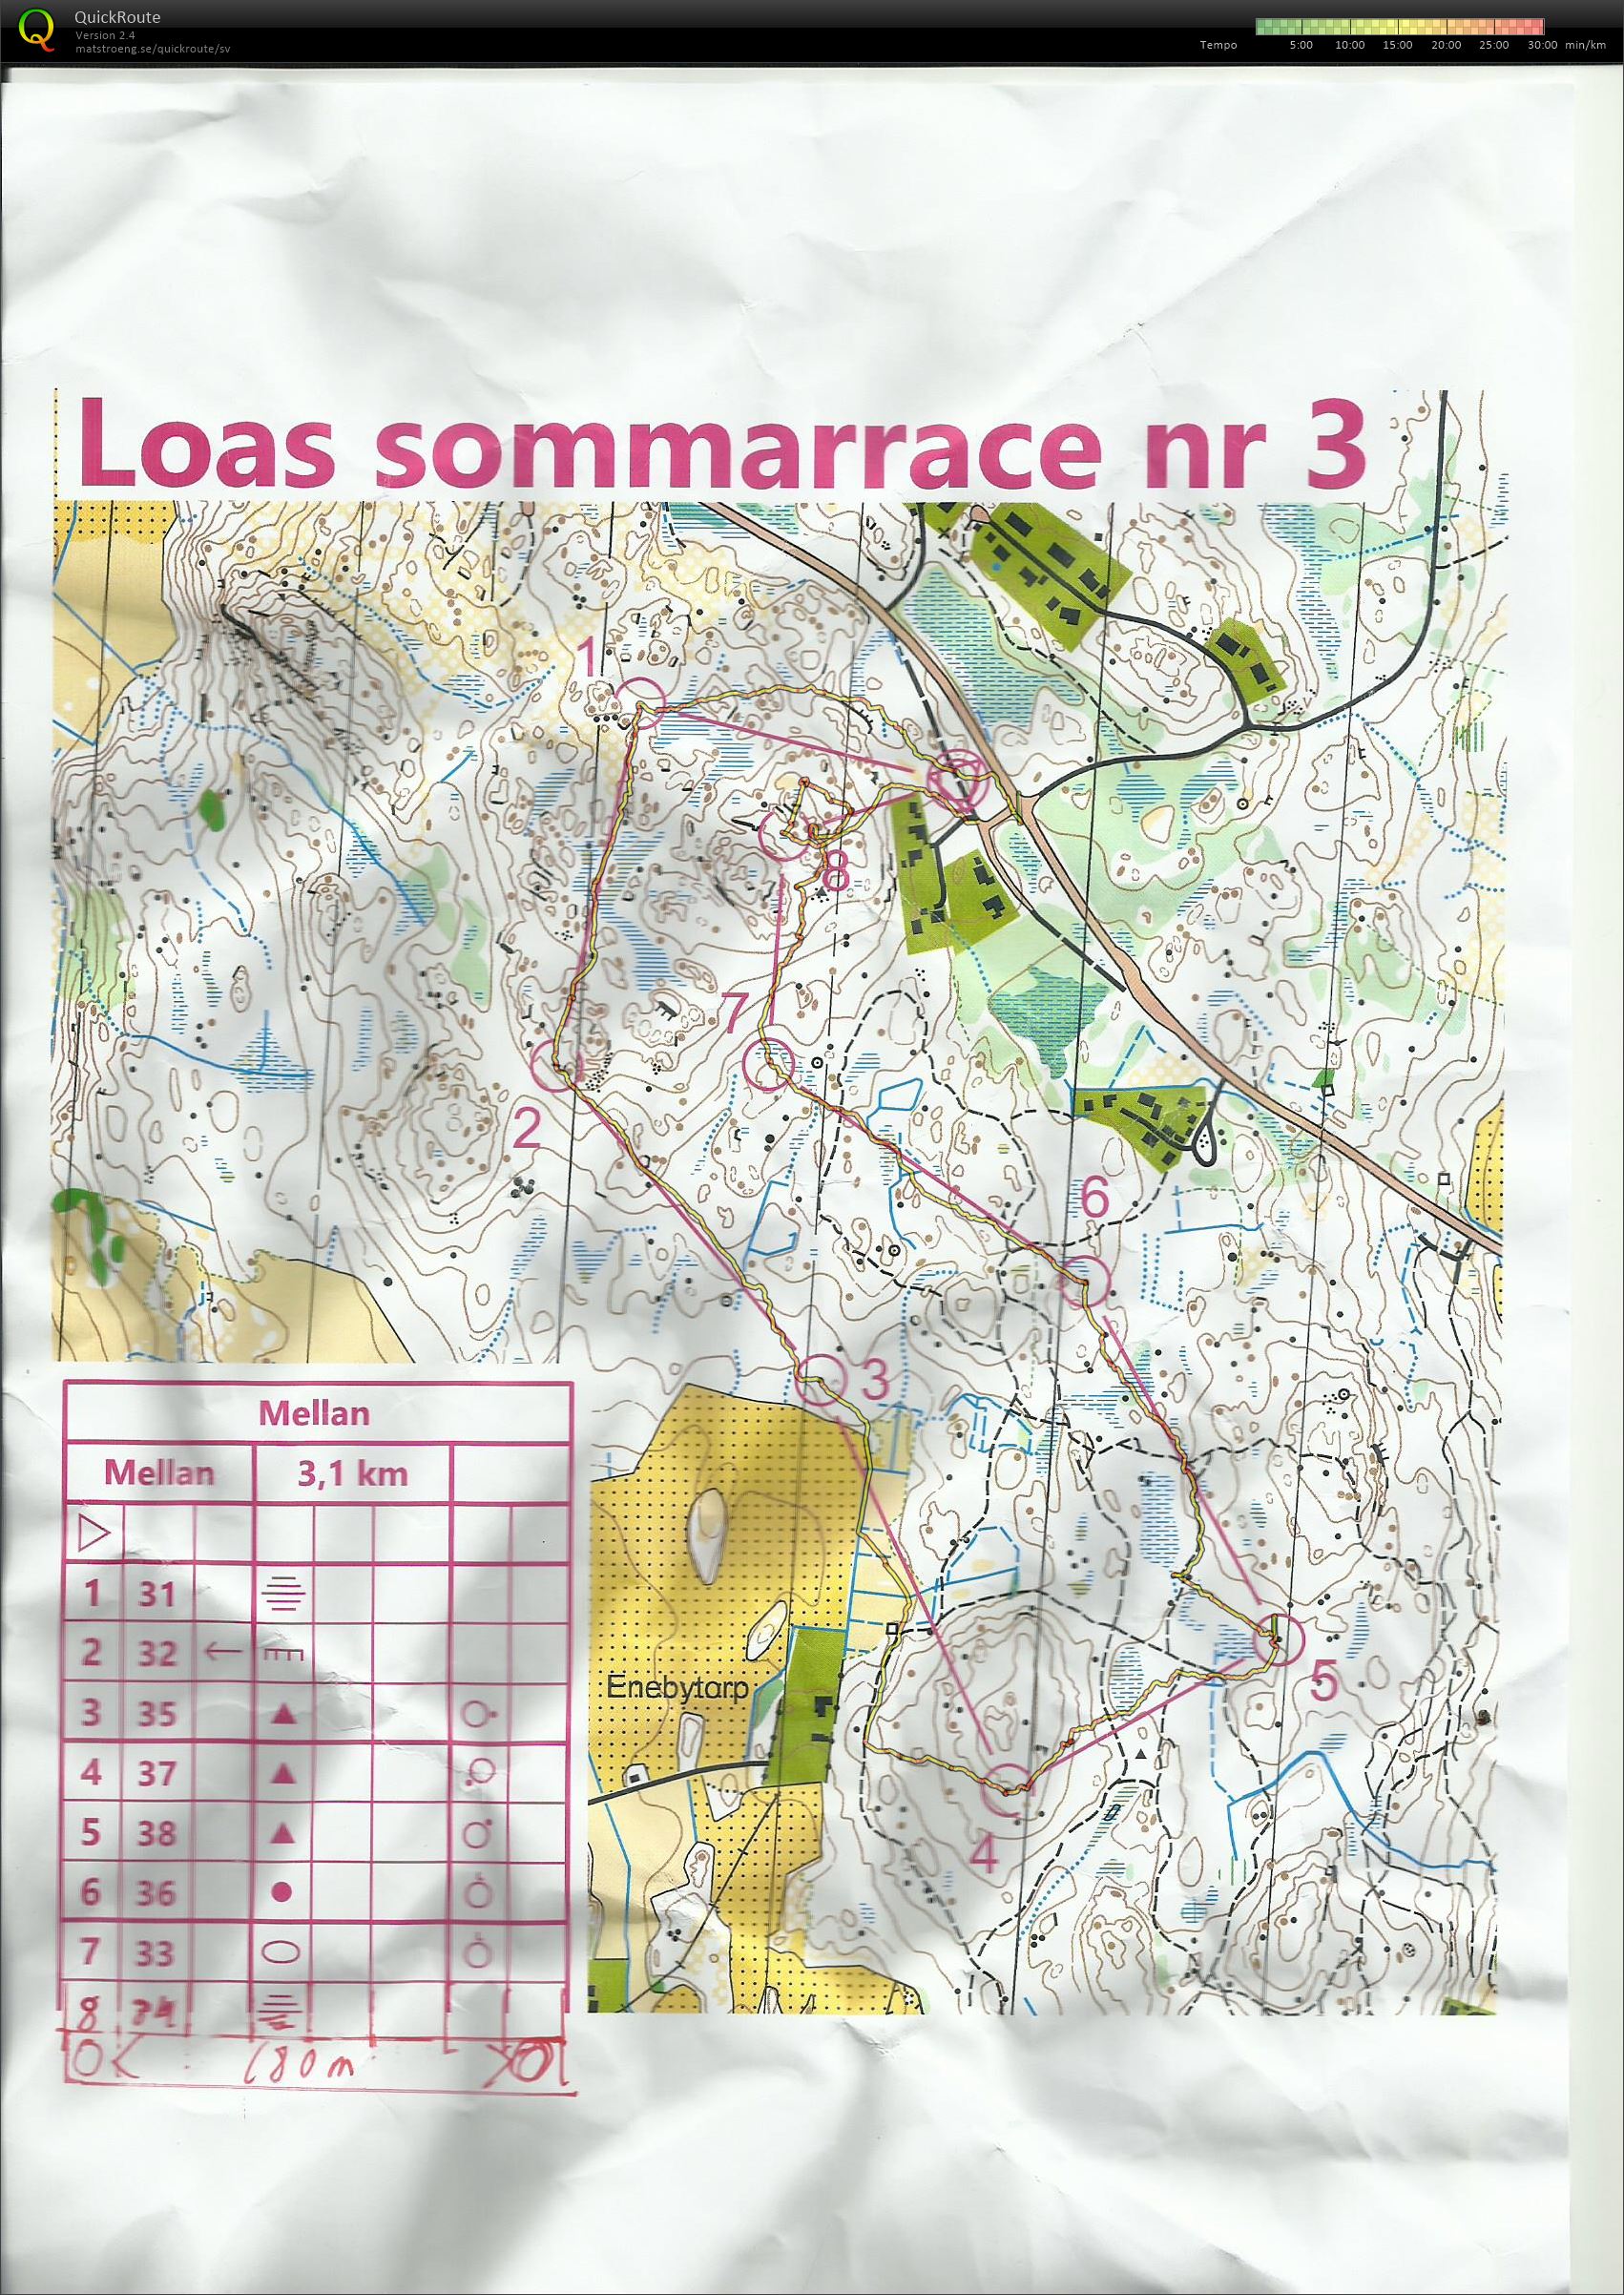 LOAs Sommarrace 3 (05.08.2020)